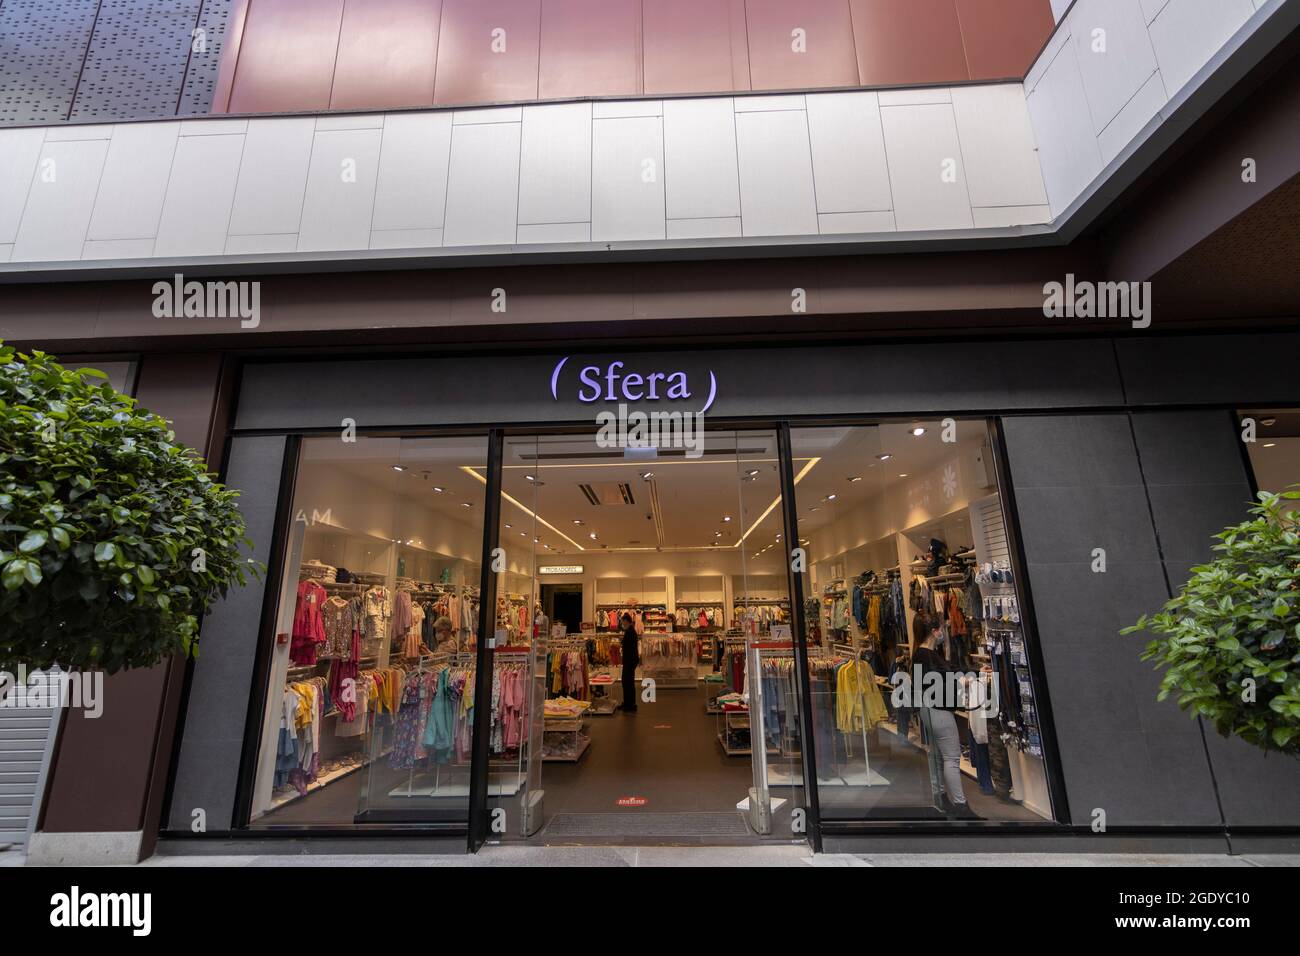 Huelva, Espagne;03.31.2021: Le magasin Sfera du centre commercial Holea. Banque D'Images